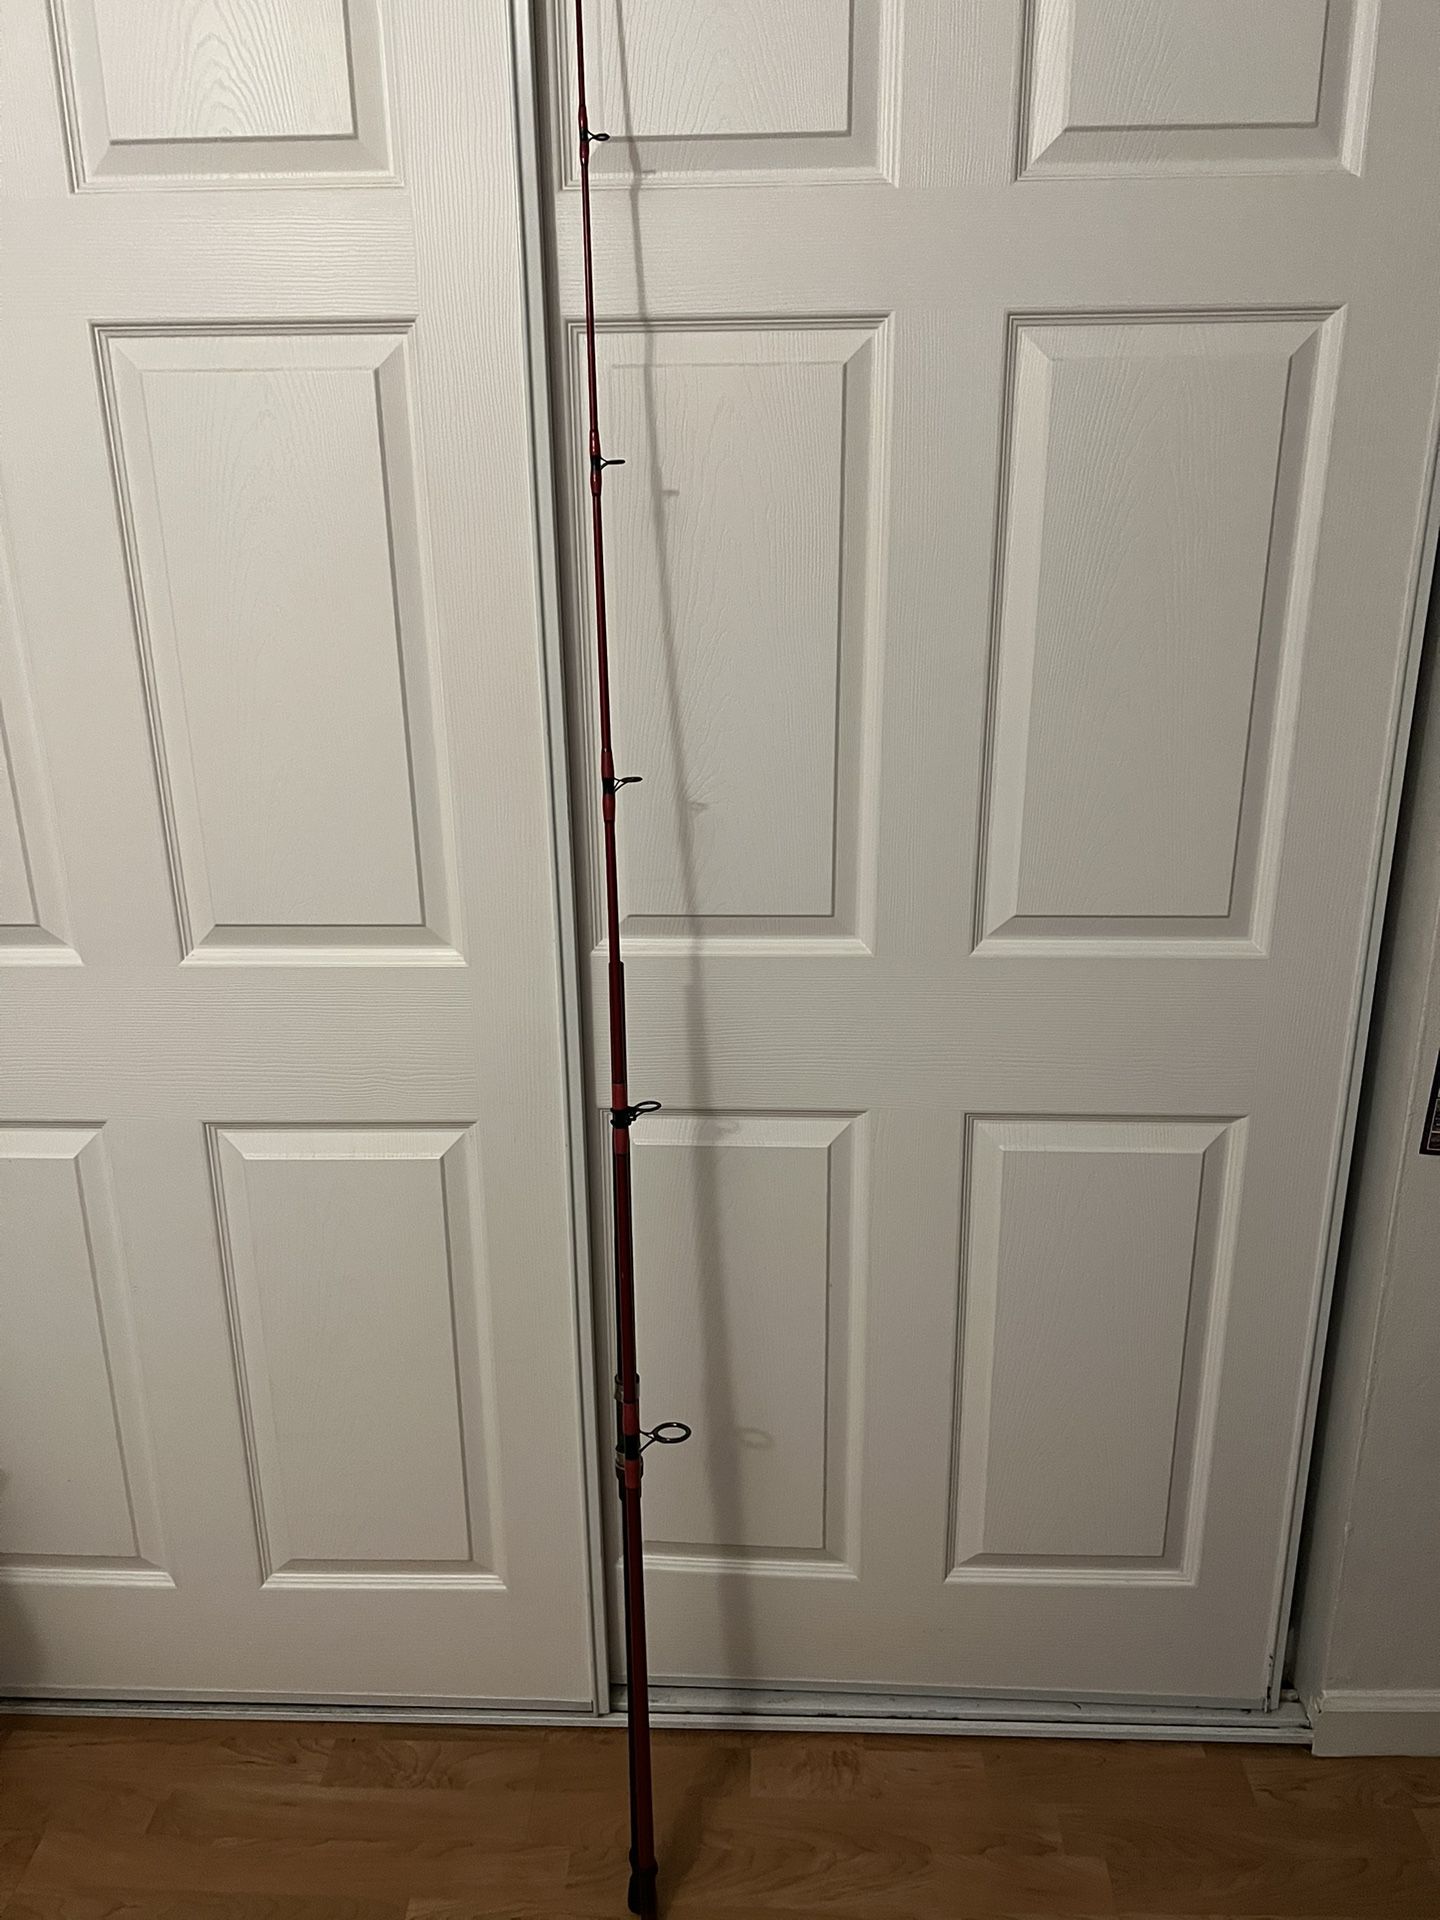 Fishing Rod $150 OBO